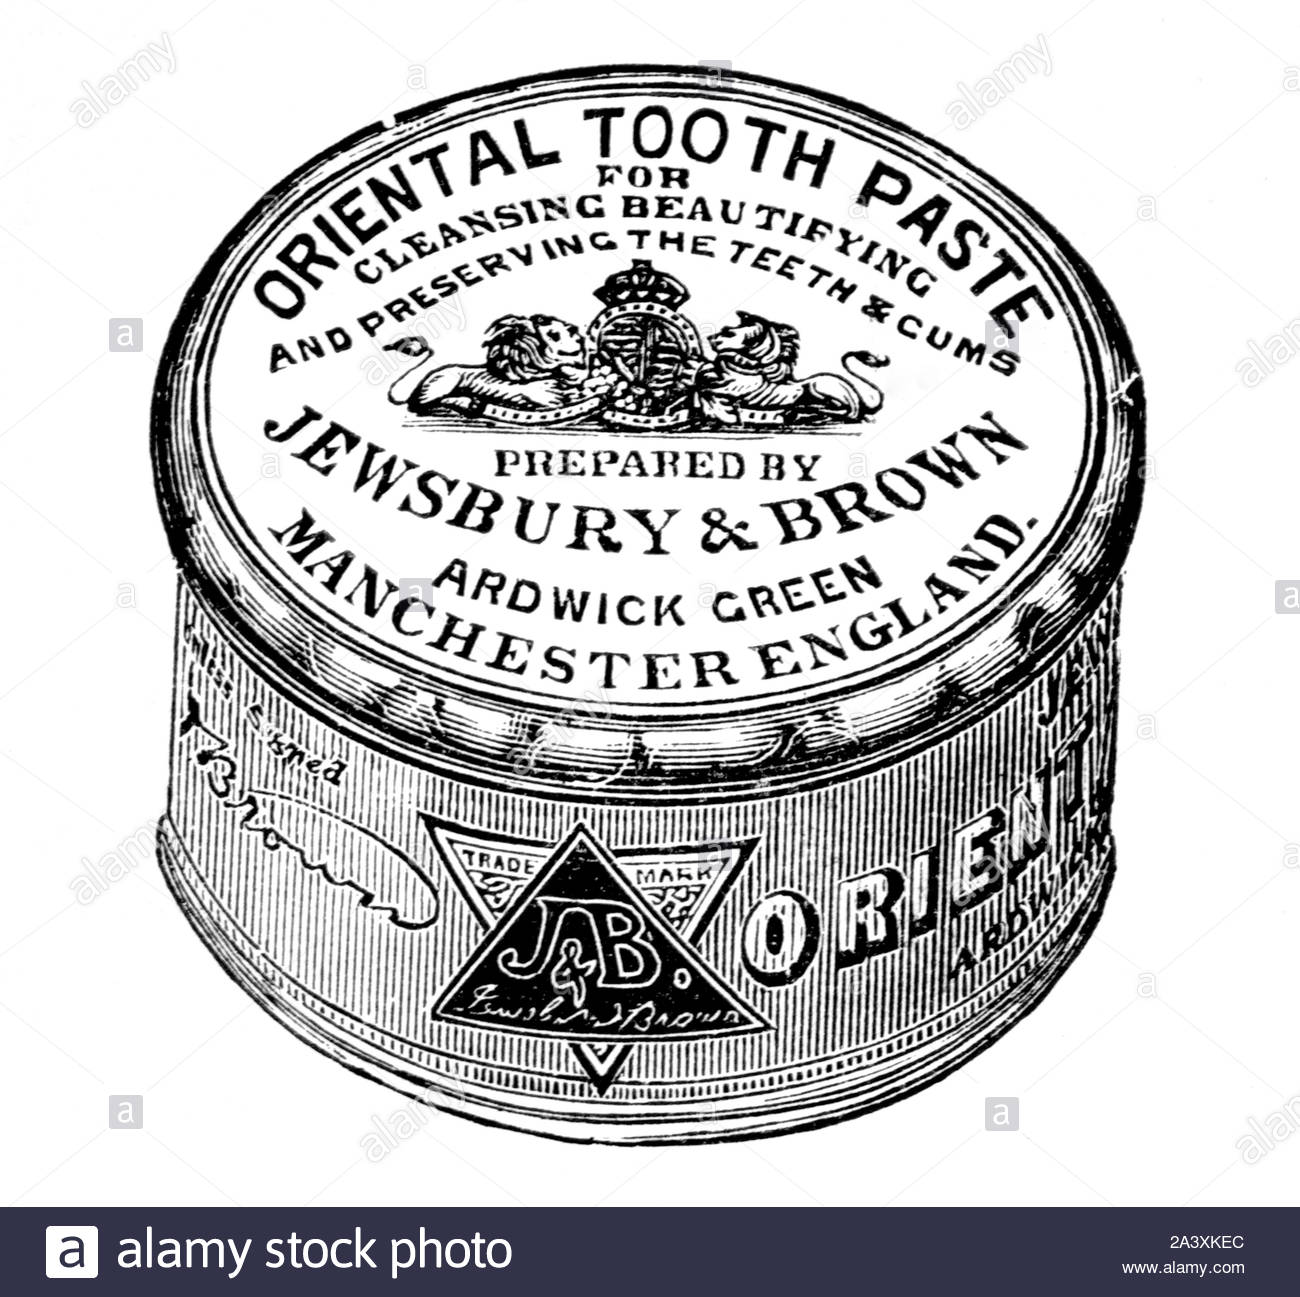 Der viktorianischen Ära, Orientalische Zahnpasta, Vintage Werbung von 1897 Stockfoto